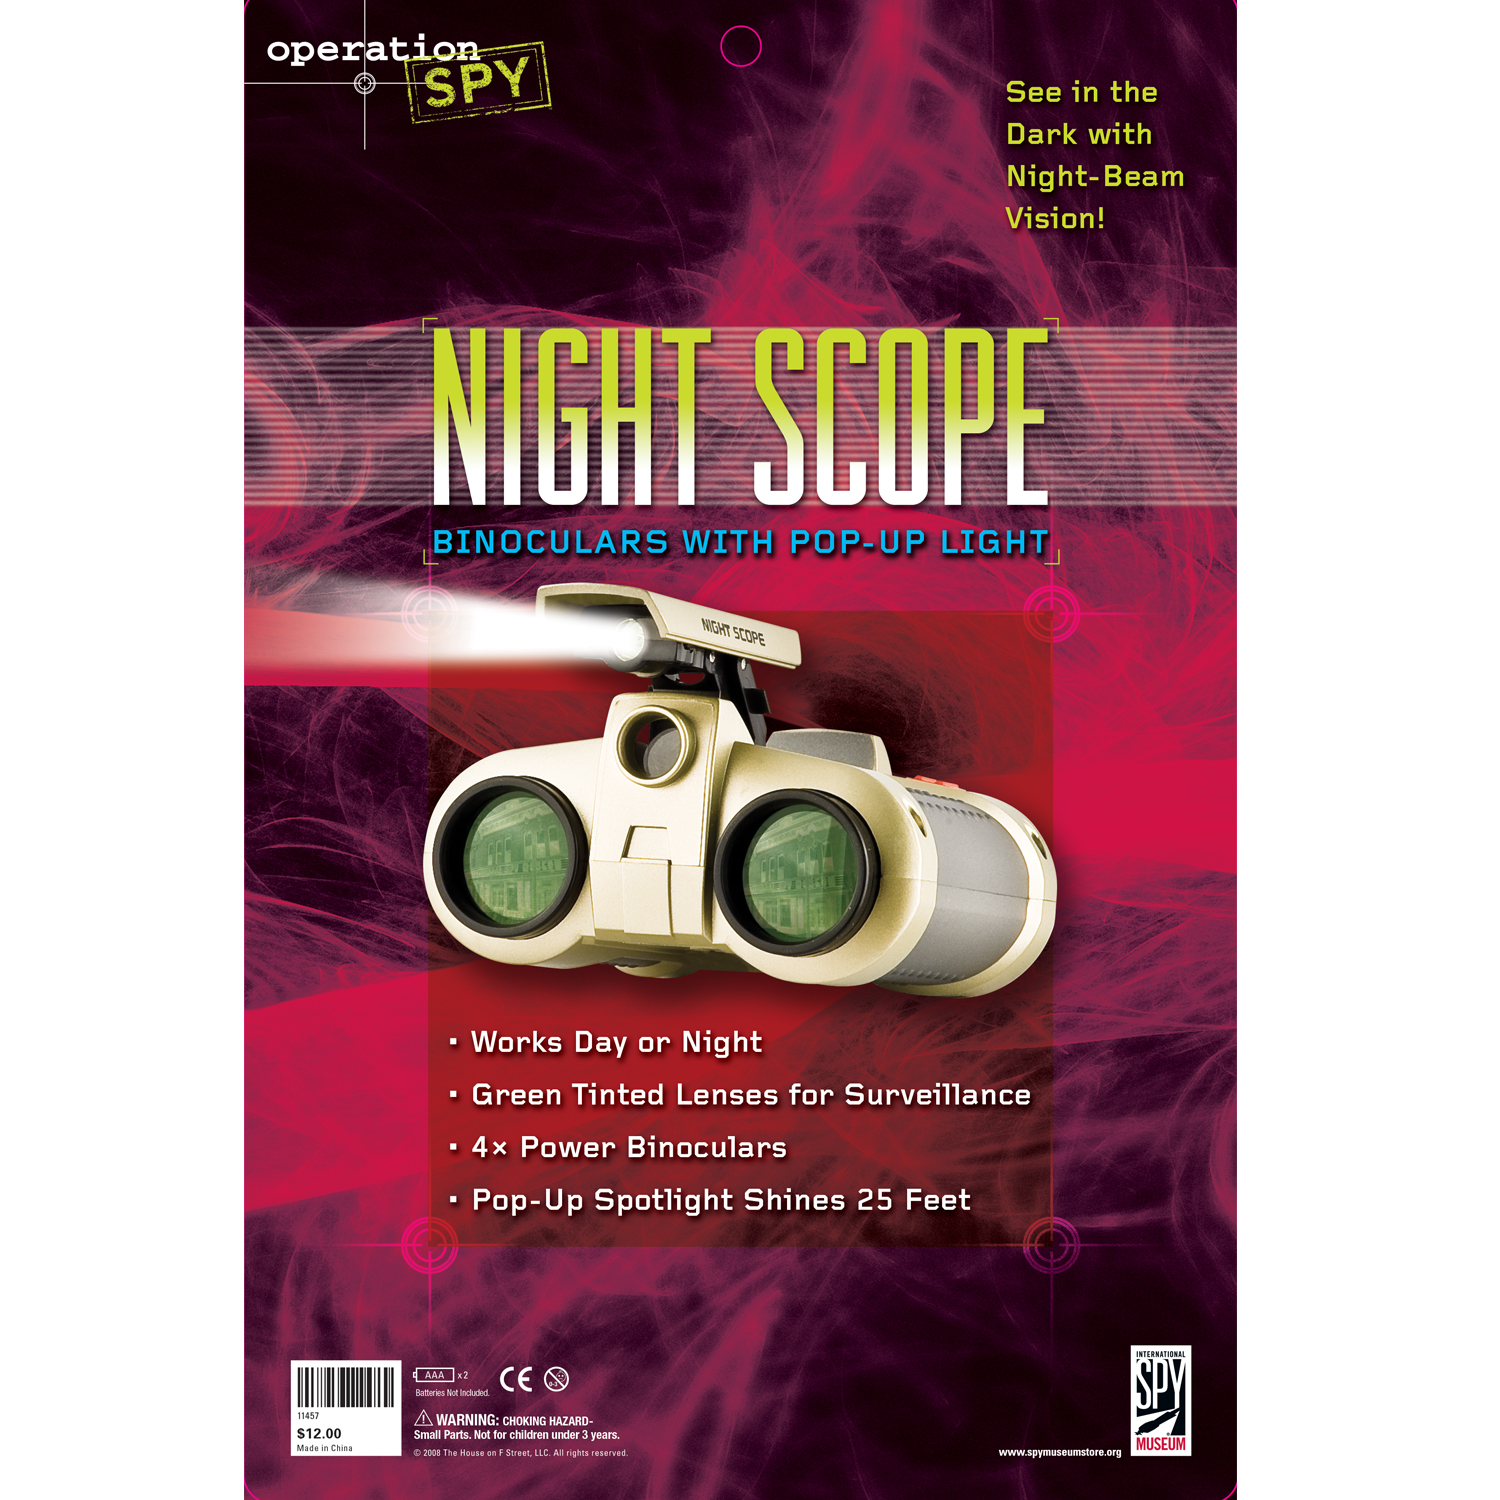 spy_packaging_nightscope.jpg